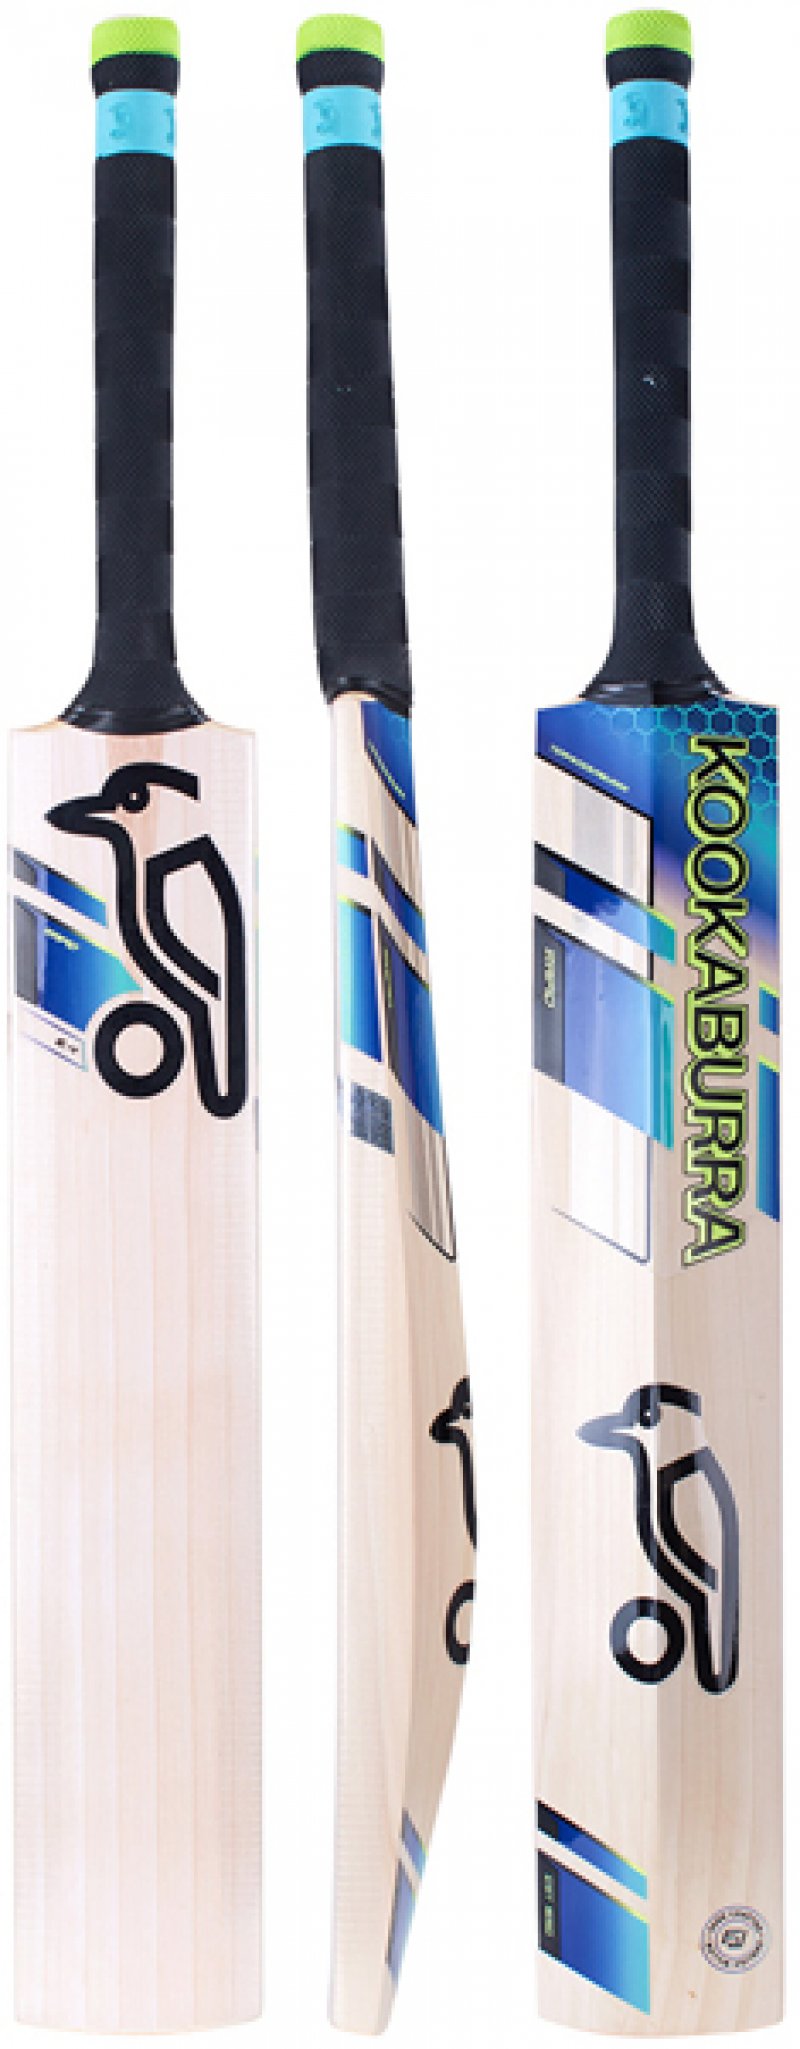 Kookaburra Rapid 6.4 Cricket Bat